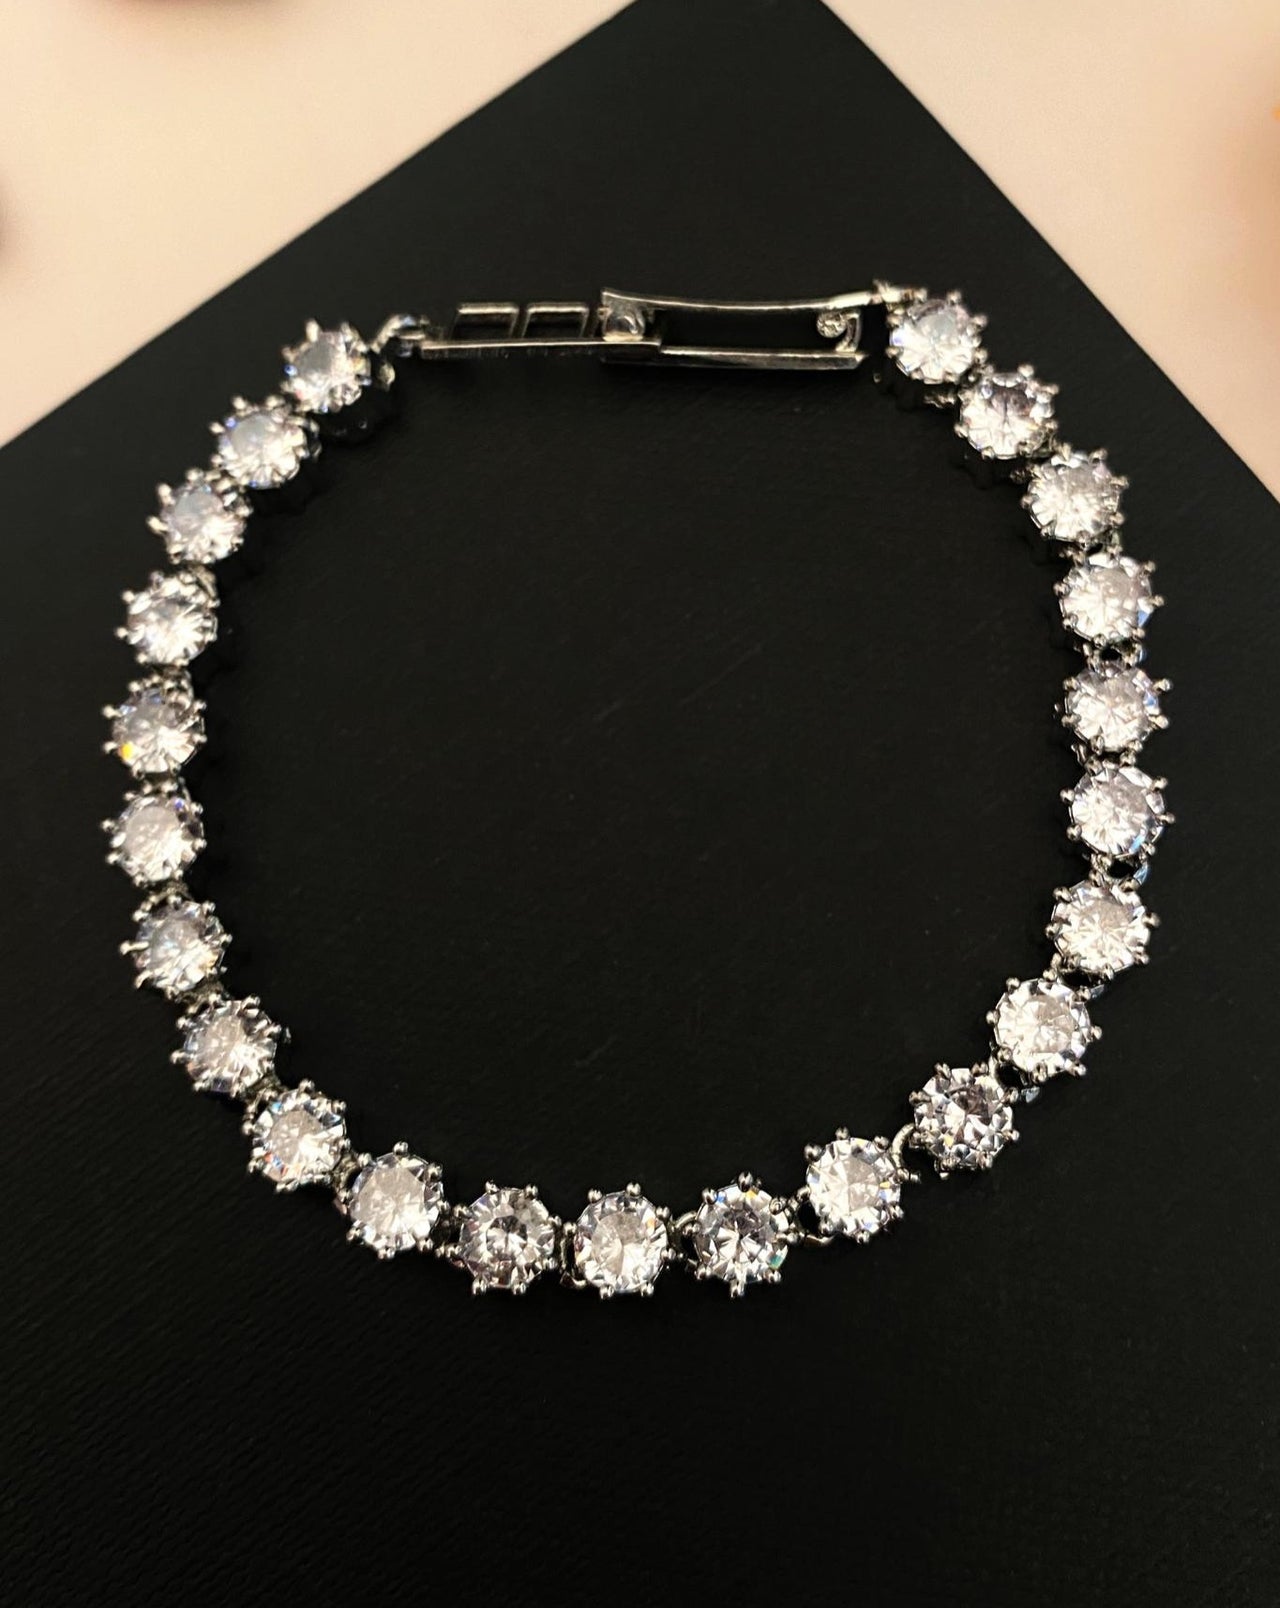 Buy Niscka Designer White American Diamond (Ad) Openable Bracelet online